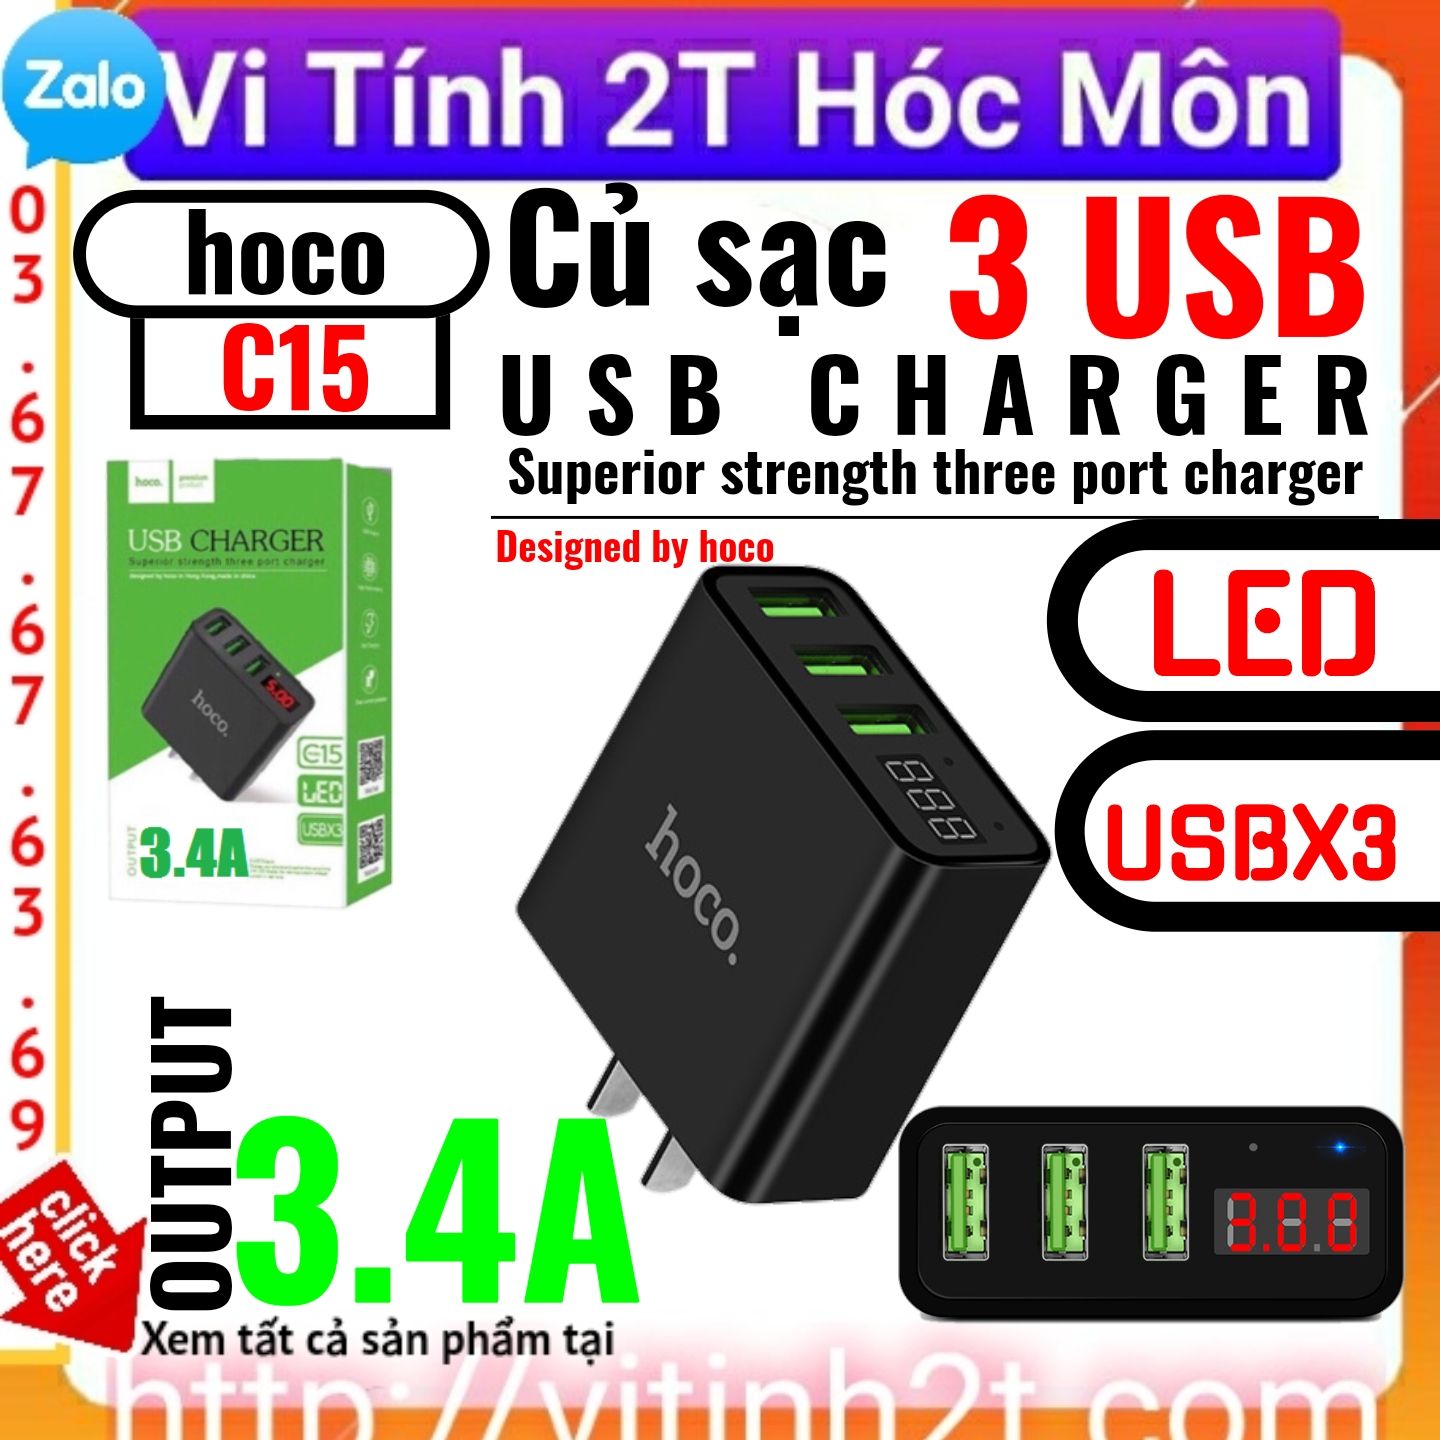 Củ sạc 3 cổng USB Hoco C15 có màn LED hiển thị đo dòng Hàng Chính Hãng